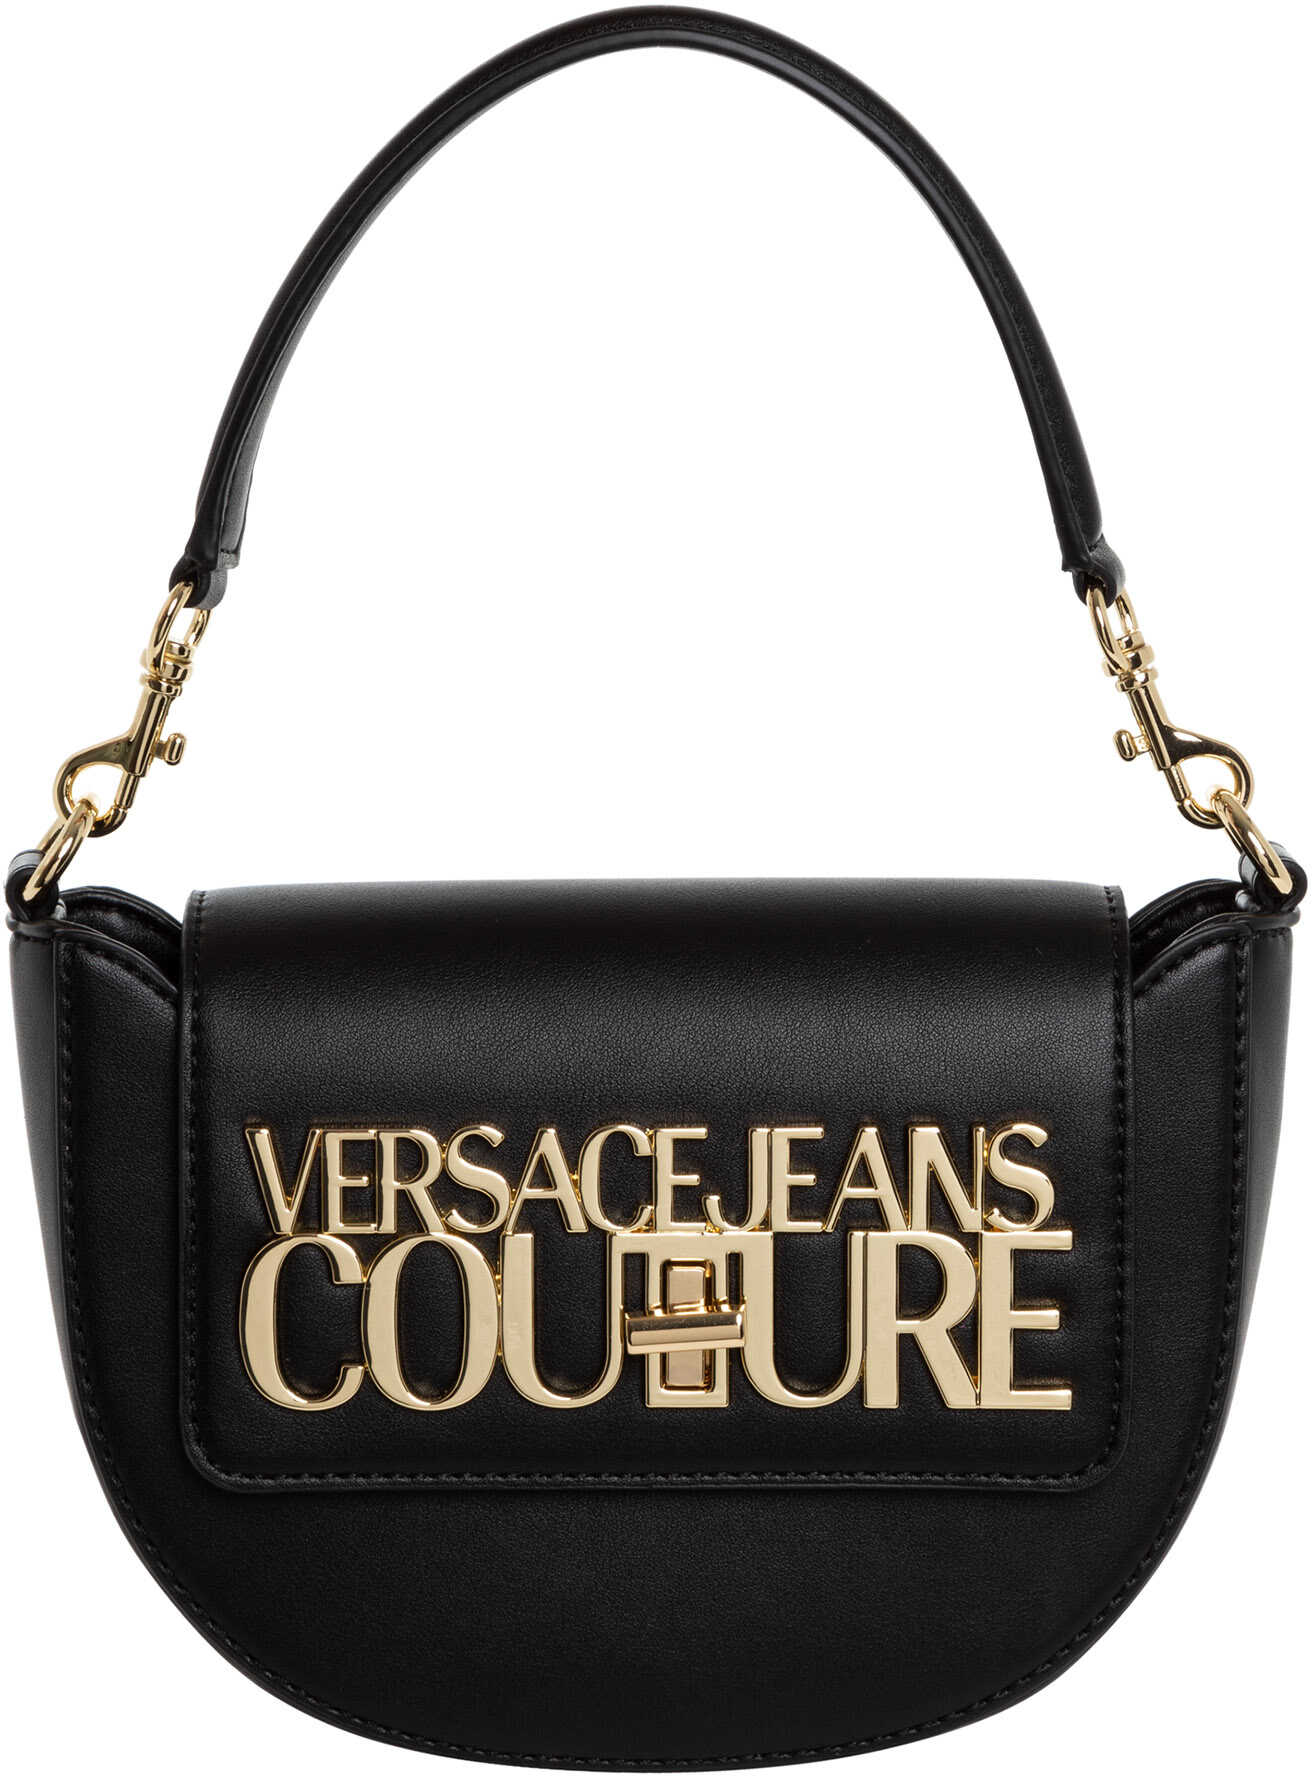 Versace Jeans Couture Handbag Black image14